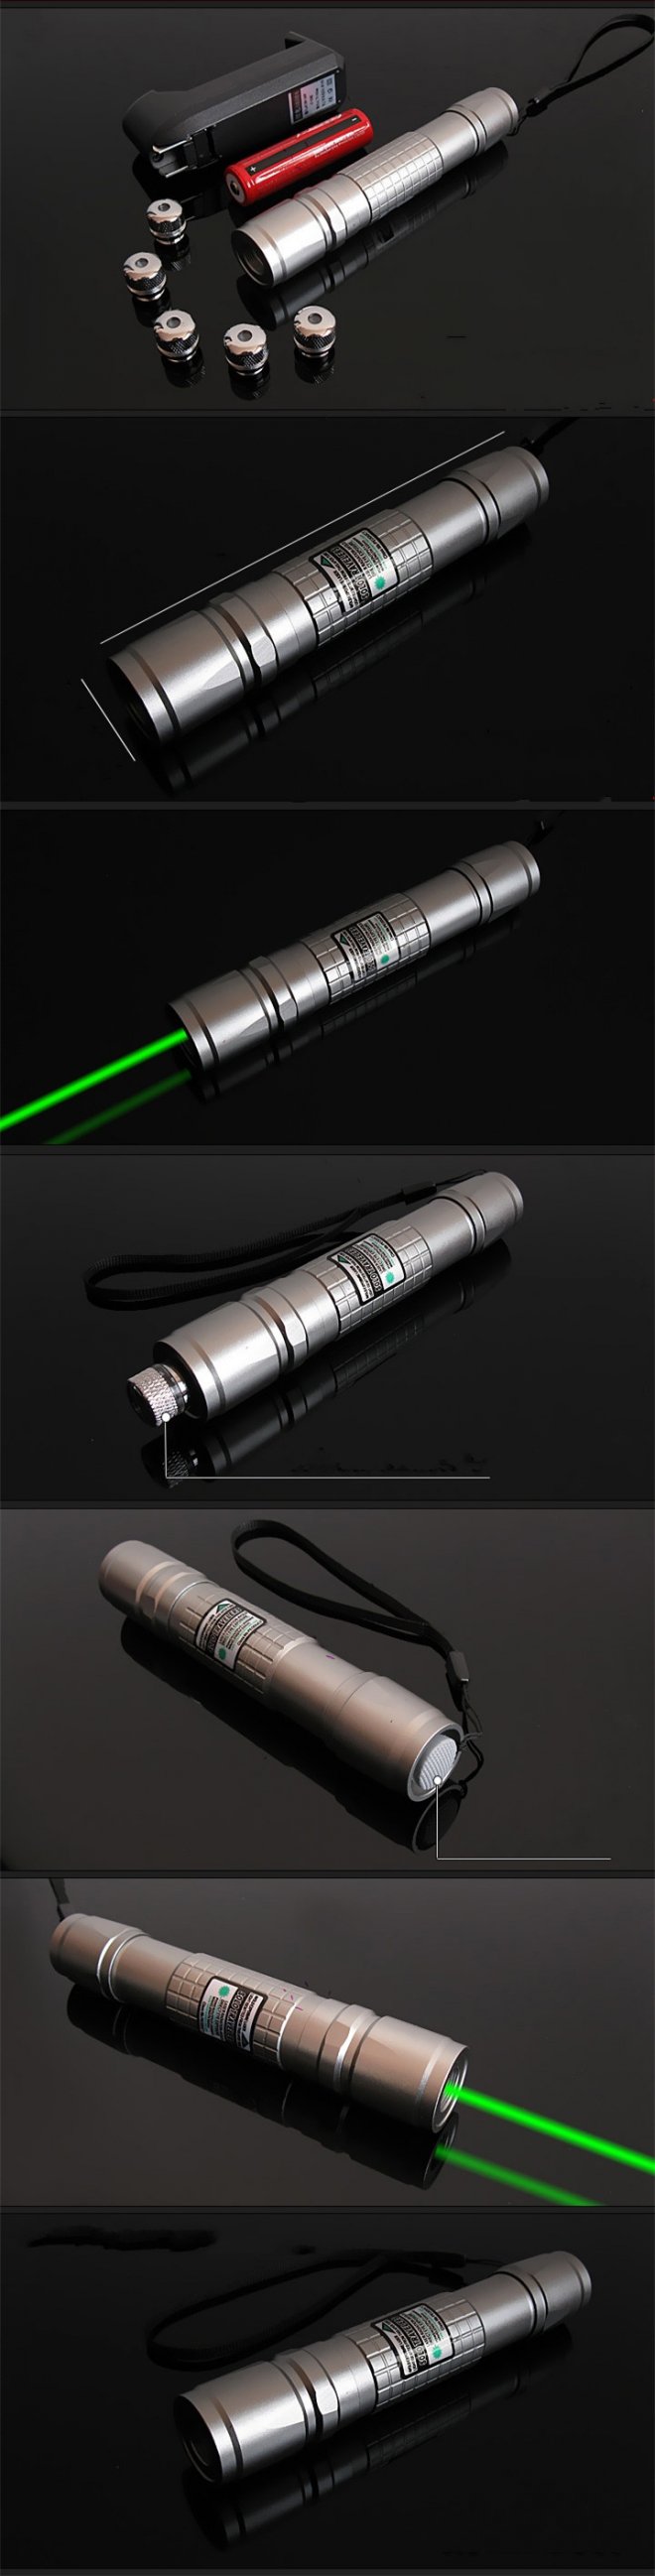 pointeur laser vert 300mw